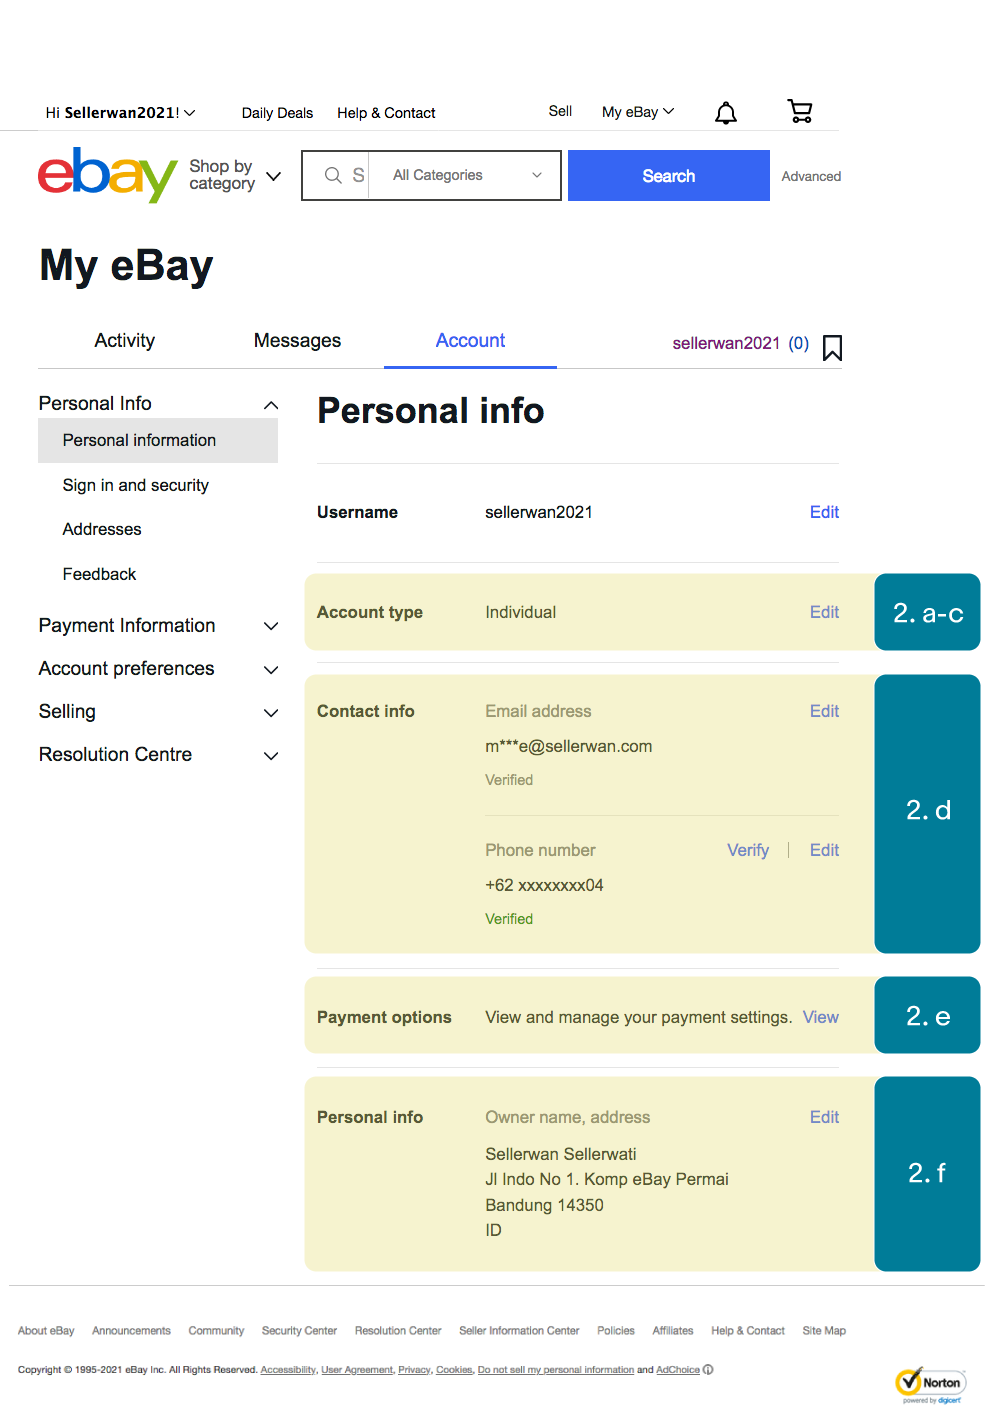 Apa yang harus dilakukan seller setelah menerima email/message/SMS pemberitahuan eBay Managed Payments dari eBay? 